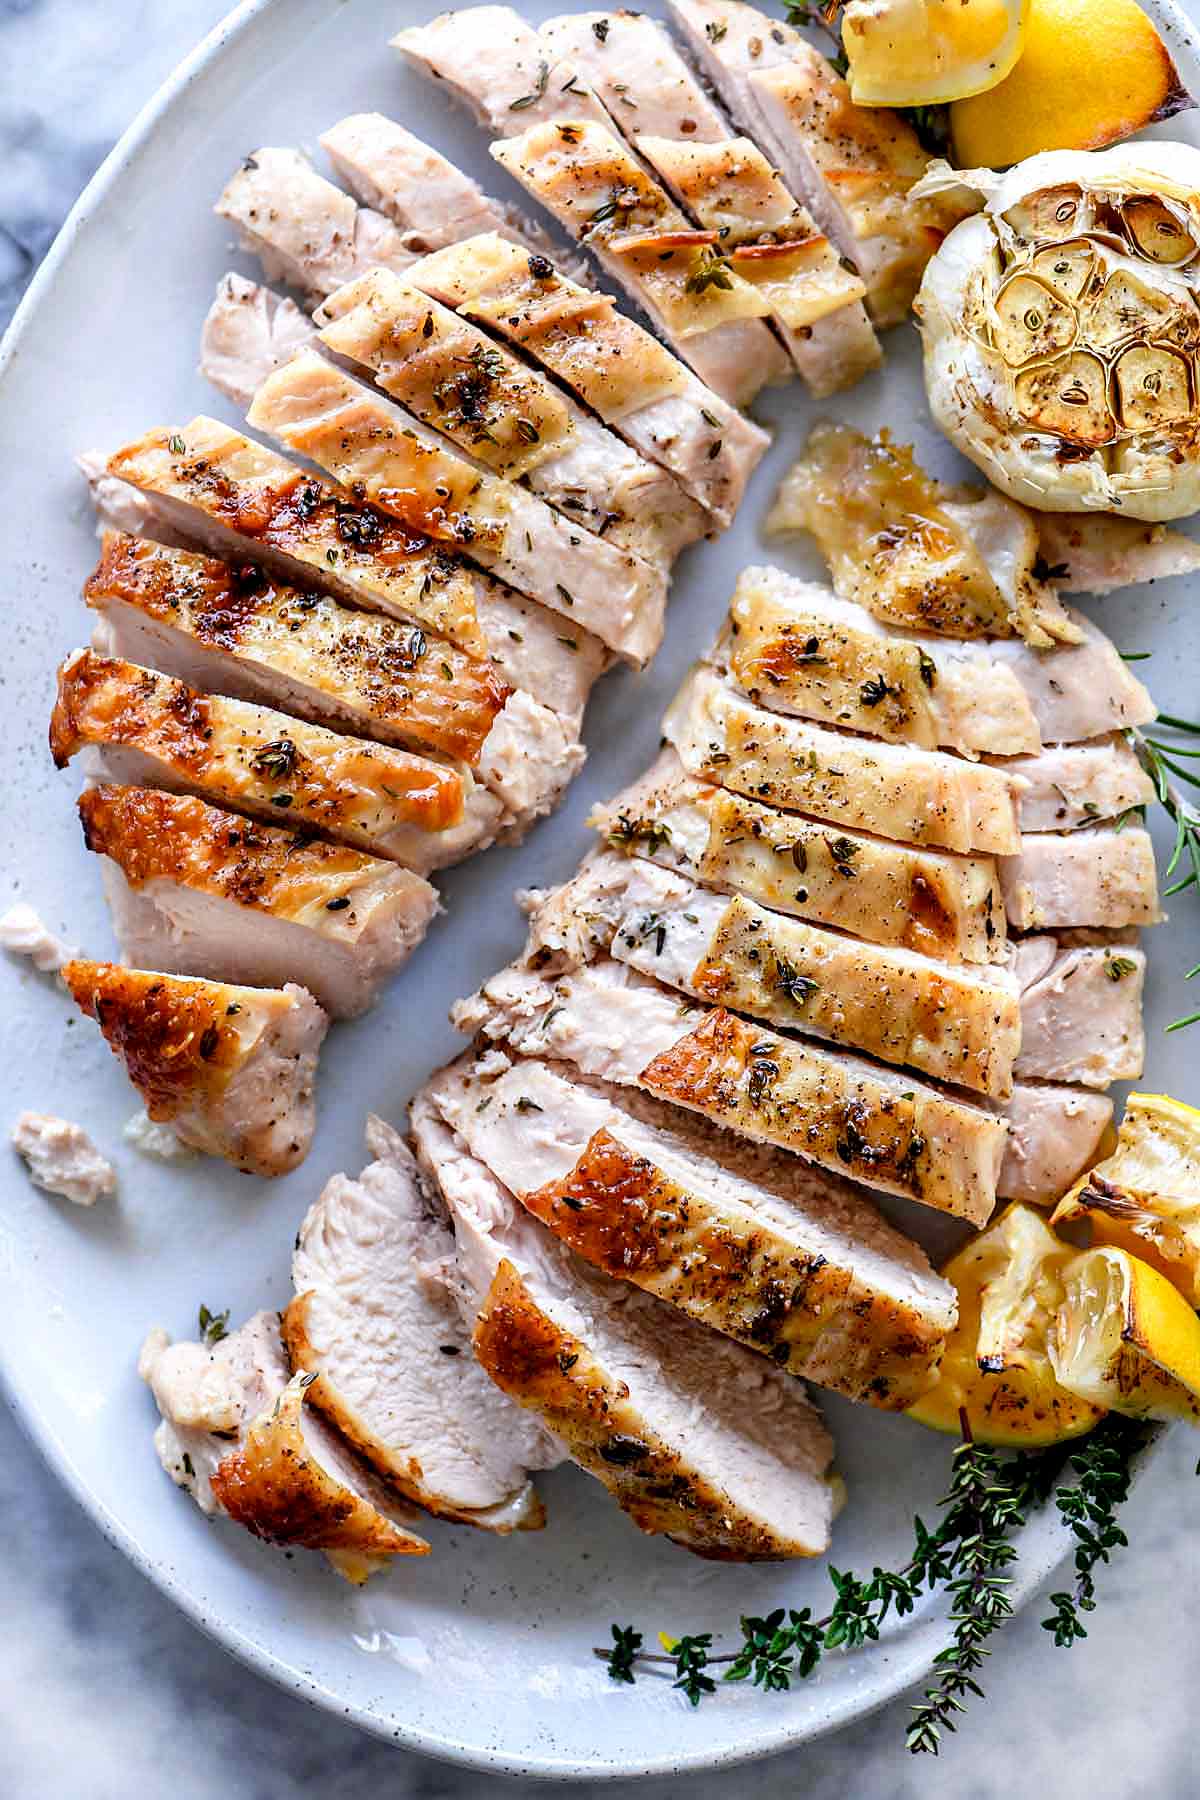 Recette de poitrine de dinde rôtie juteuse | foodiecrush.com #turkey #roasted #oven #breast #recipes